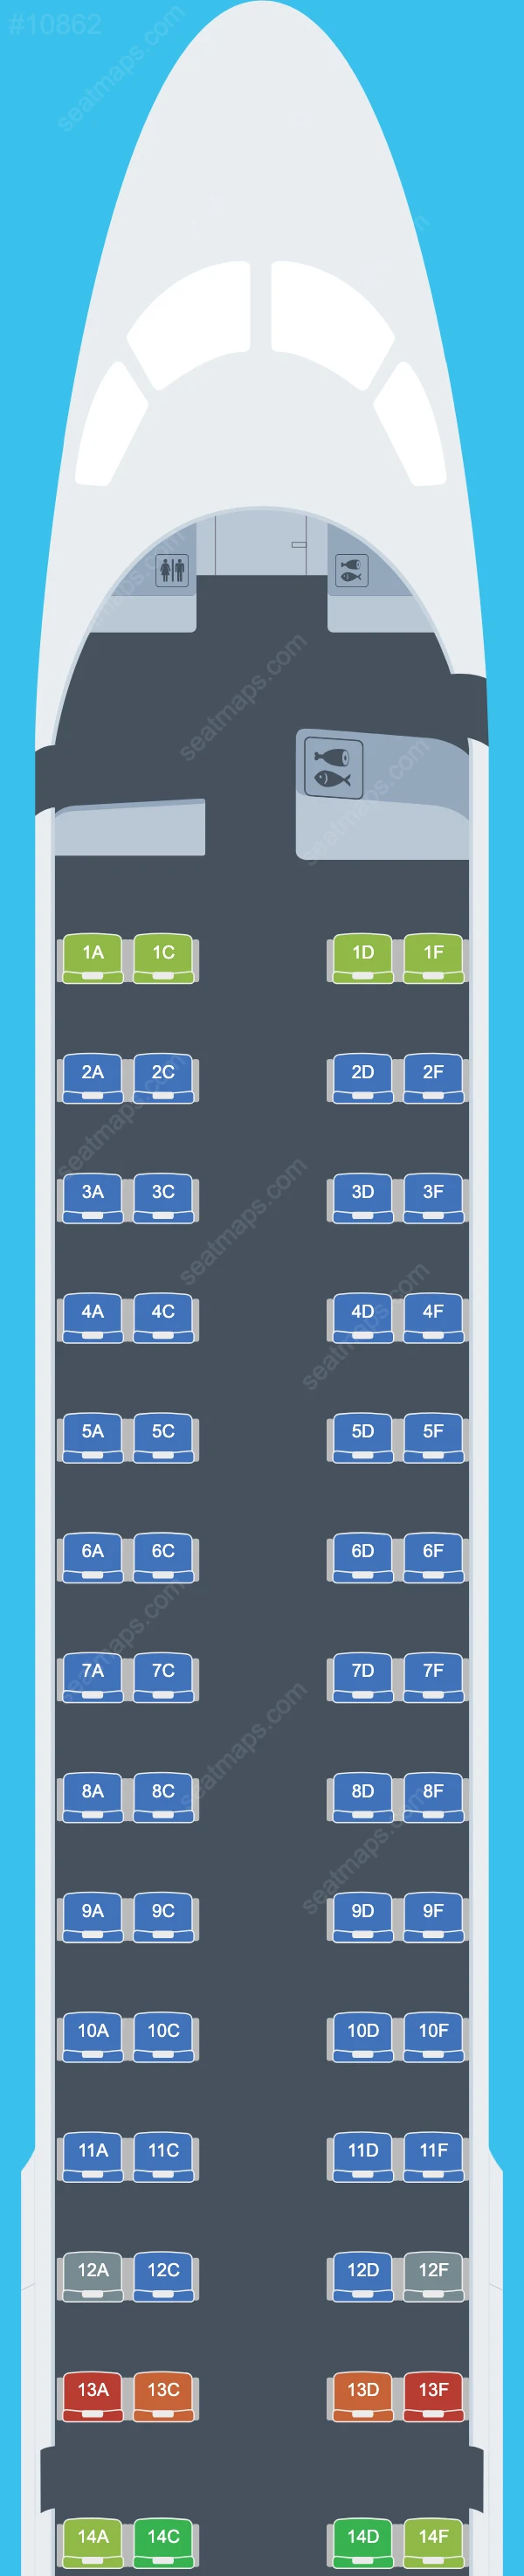 Air Europa Embraer E195 Seat Maps E195 V.1